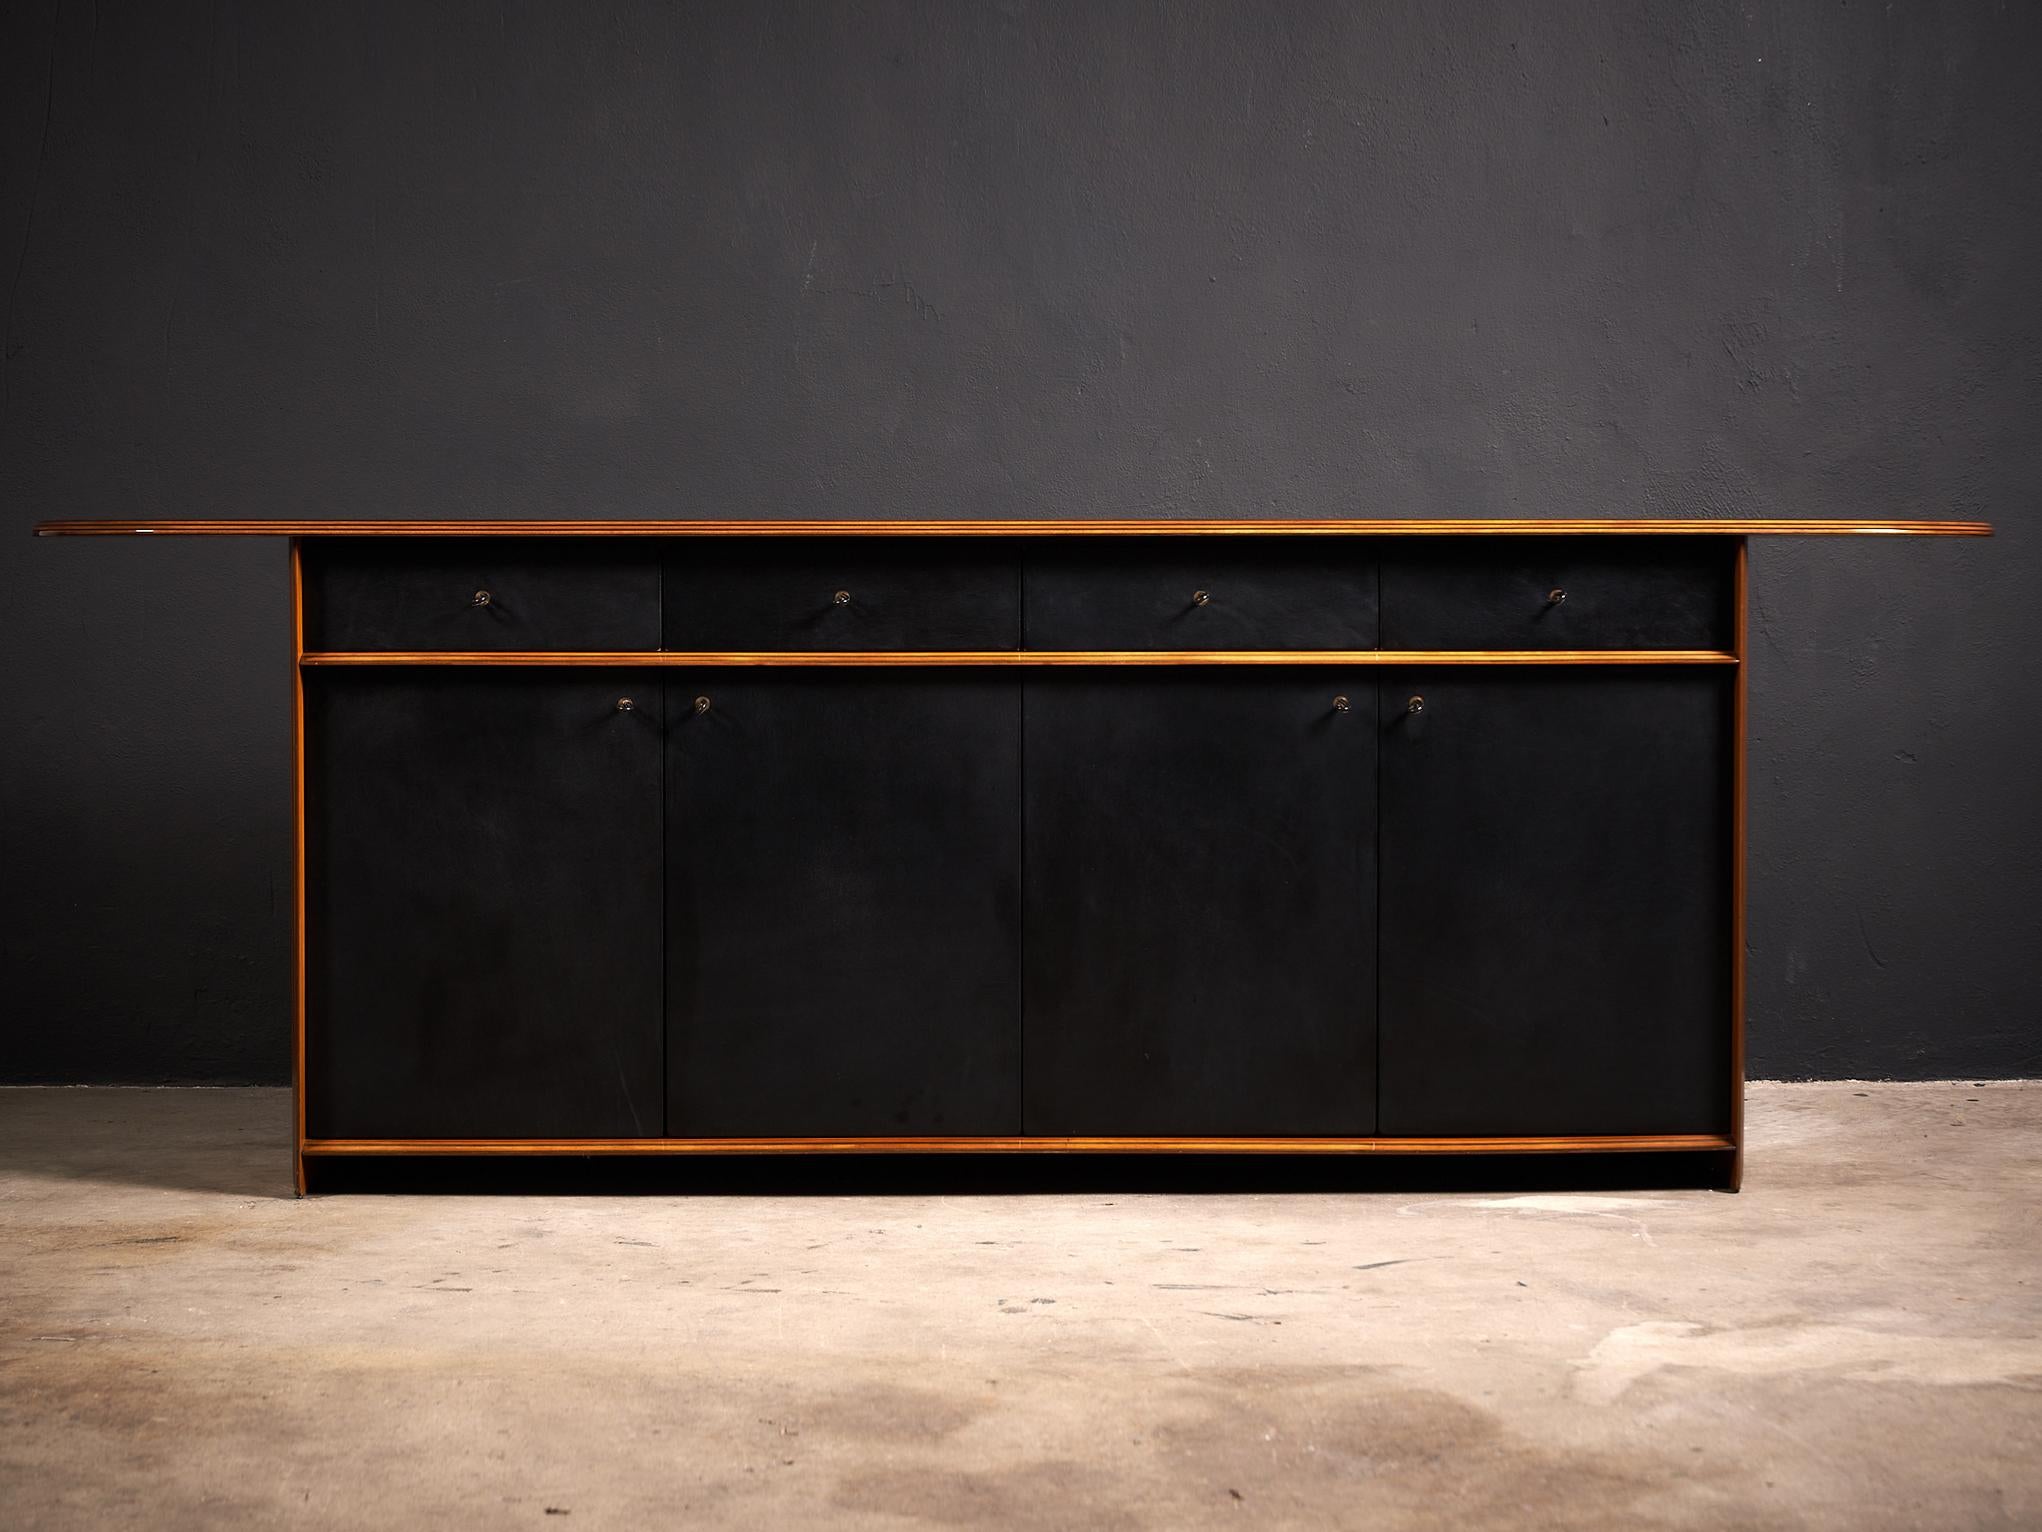 
Le buffet Artona d'Eleg et Tobia Scarpa, produit par Maxalto dans les années 1970, est un meuble classique qui illustre l'élégante simplicité et le savoir-faire impeccable du design italien.

Fabriqué à partir de matériaux de haute qualité, ce